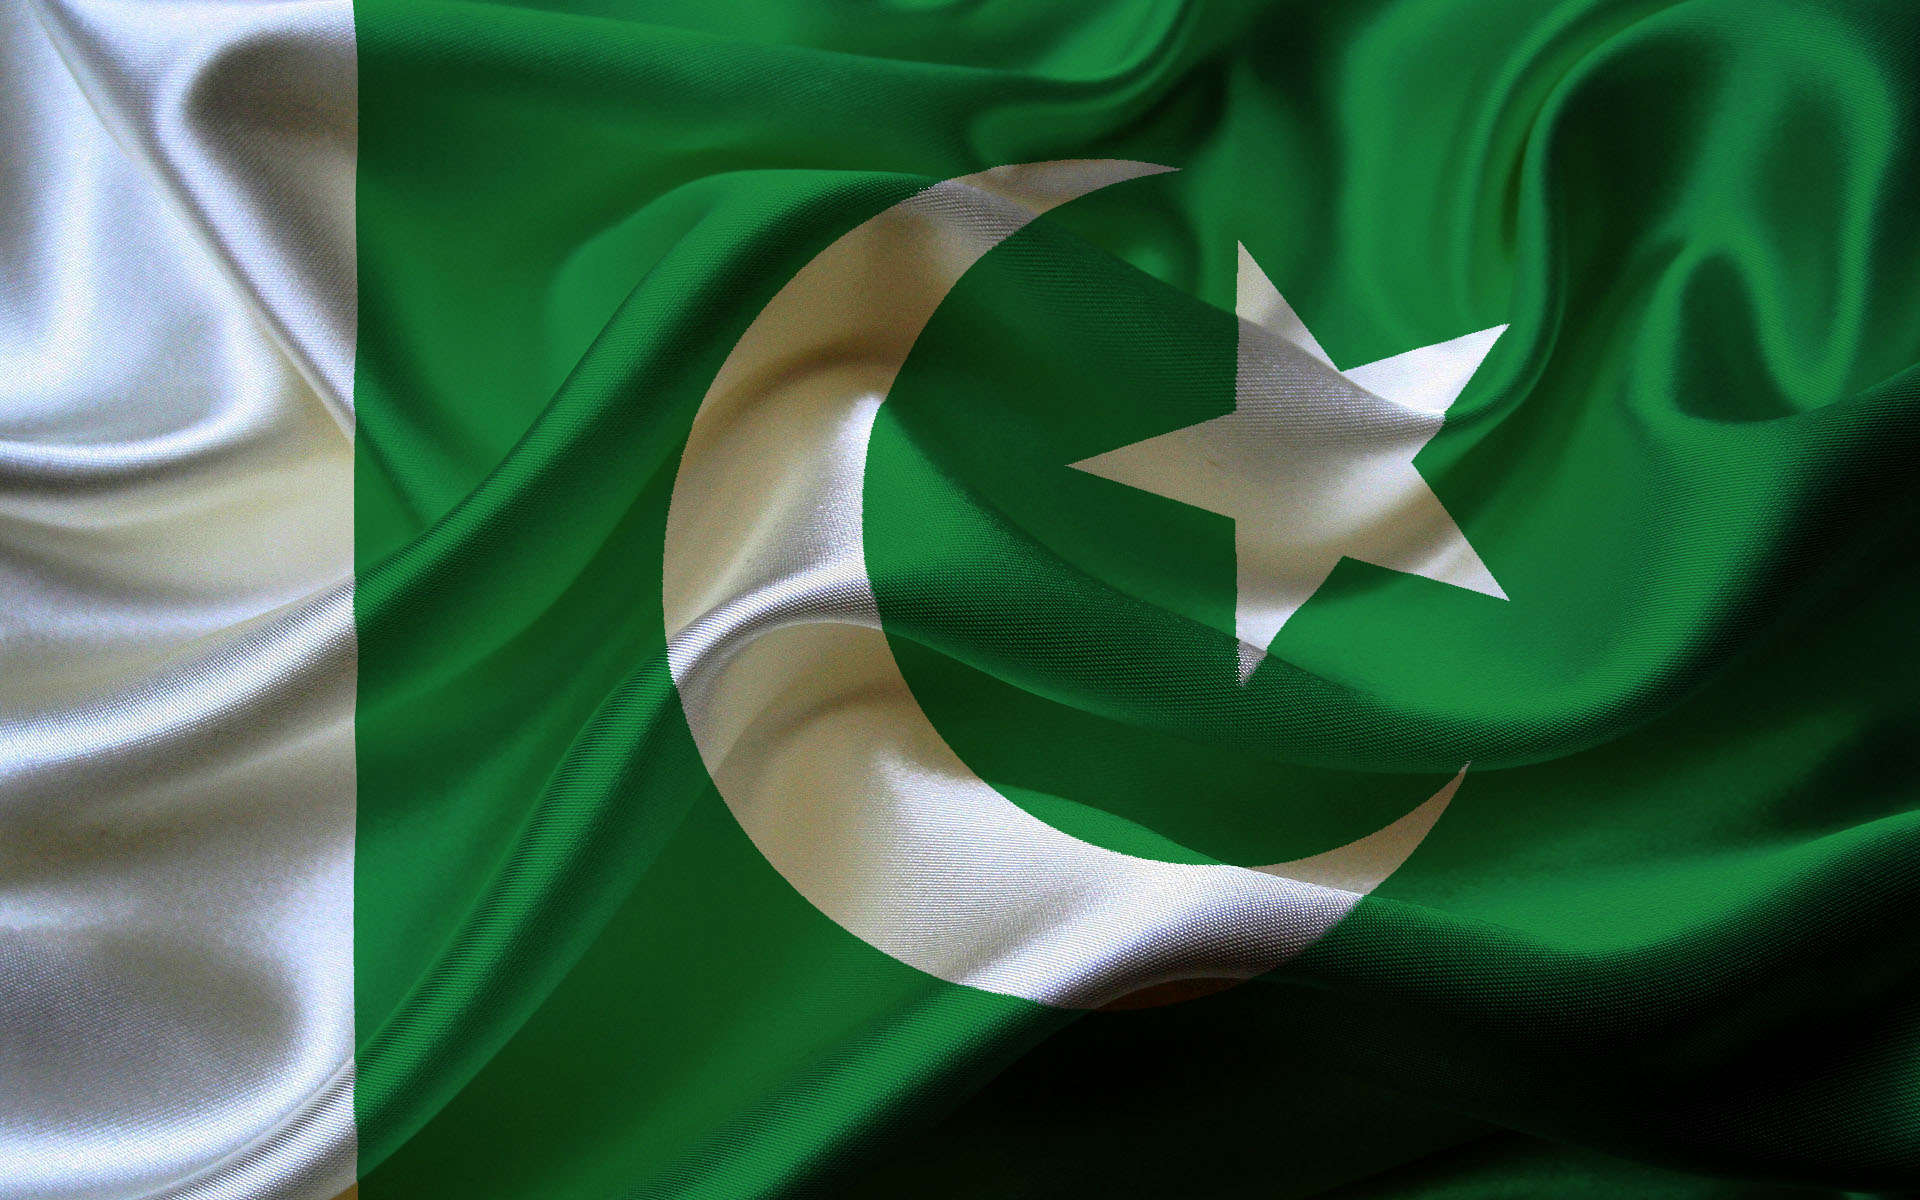 pakistan flag wallpaper,green,flag,textile,satin